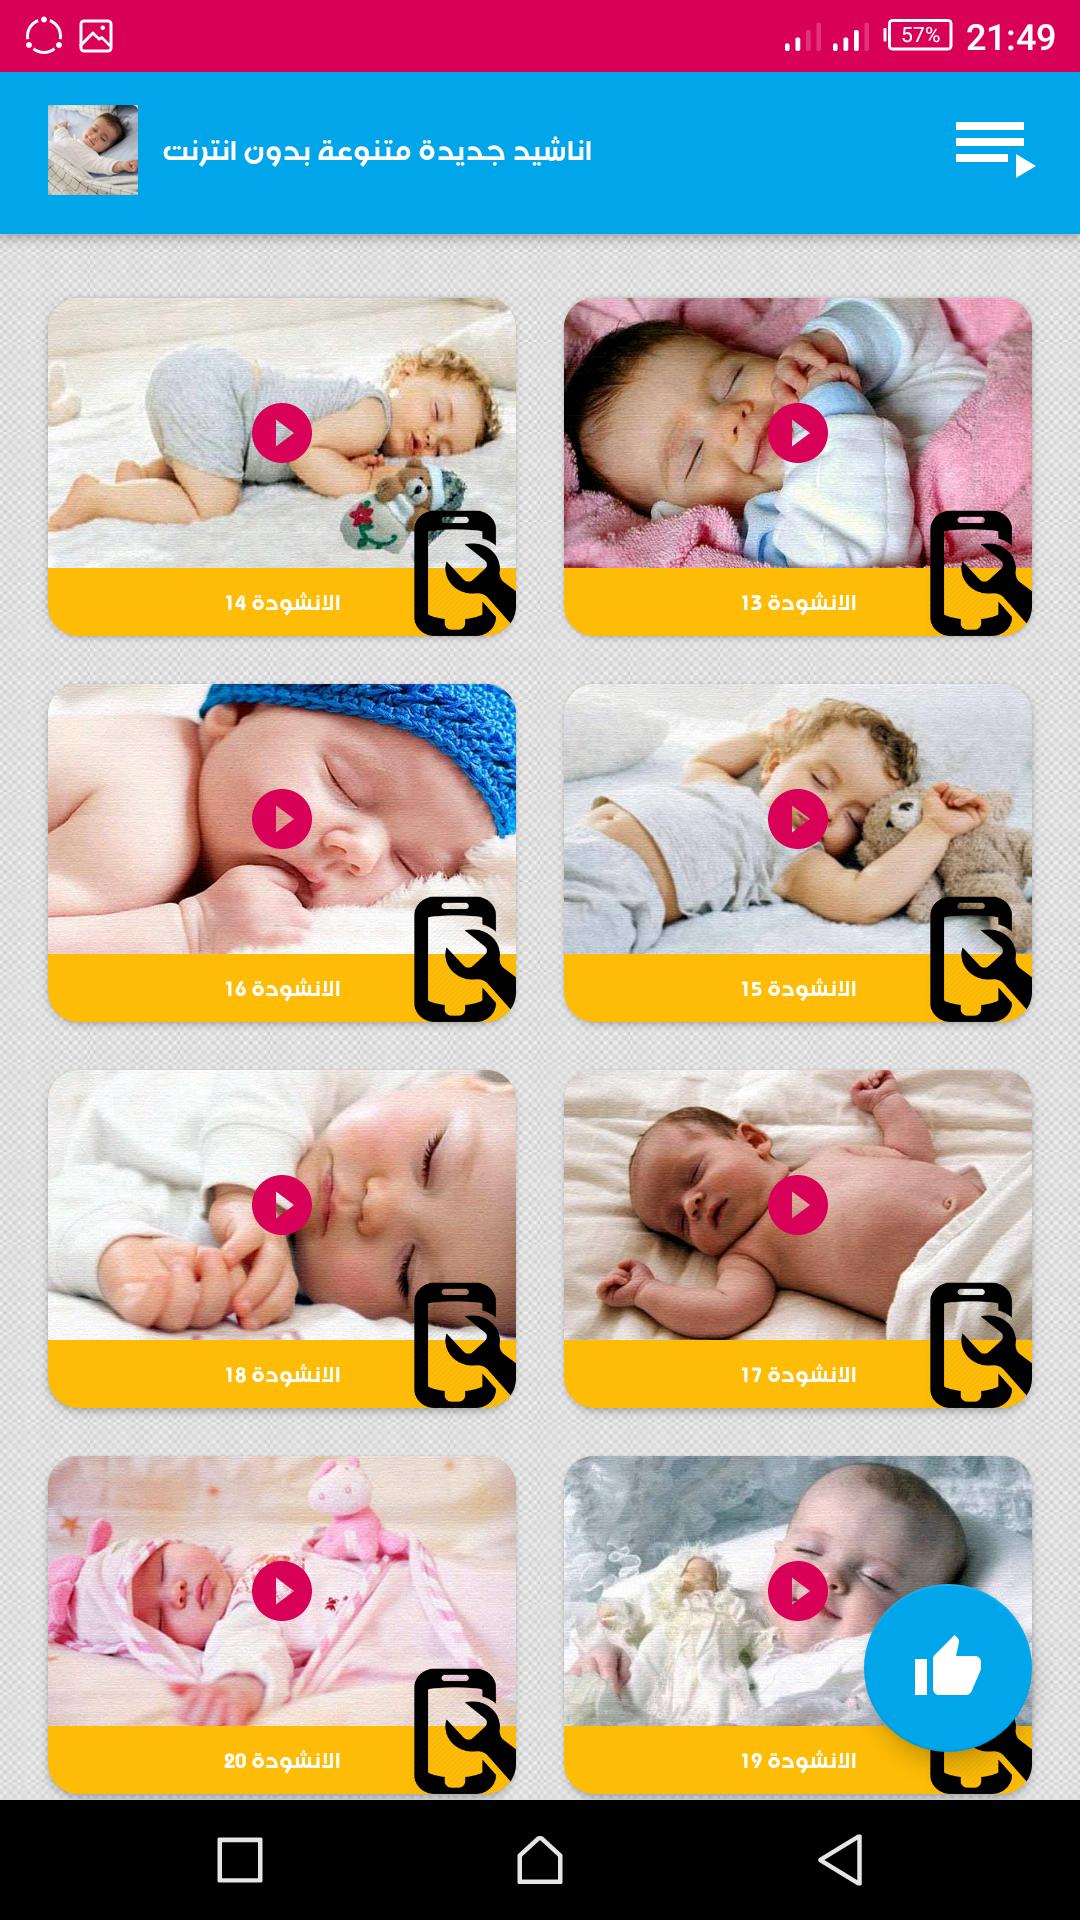 موسيقى هادئة للاطفال للنوم والاسترخاء بدون انترنت For Android